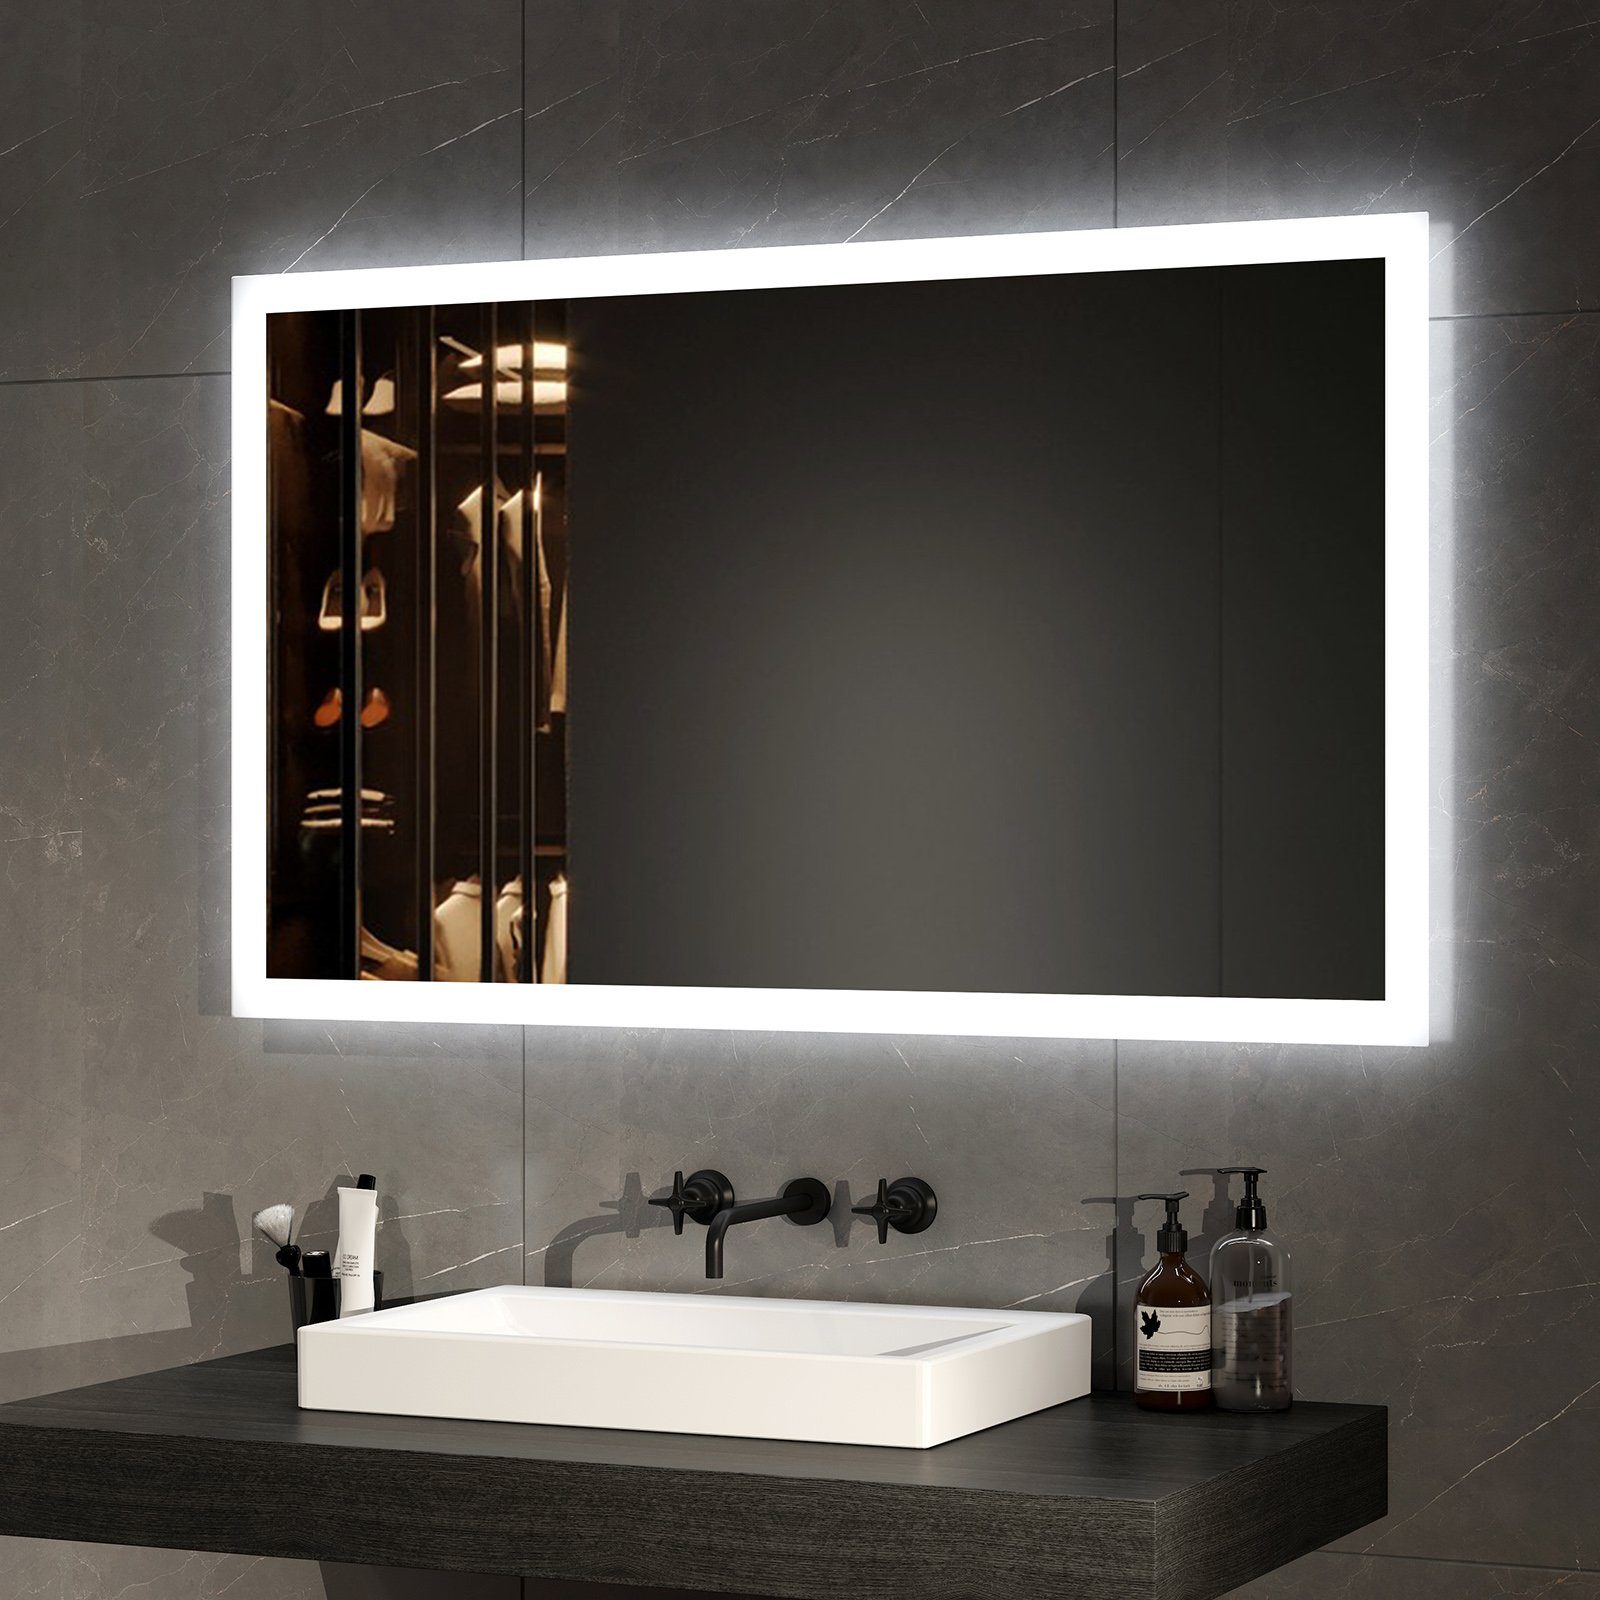 EMKE Badspiegel mit Beleuchtung LED Badezimmerspiegel Wandspiegel (Vertikal und Horizontal möglich, Breite: 60~120cm), mit Beschlagfrei, 2 Lichtfarbe Warmweiß/Kaltweiß IP44